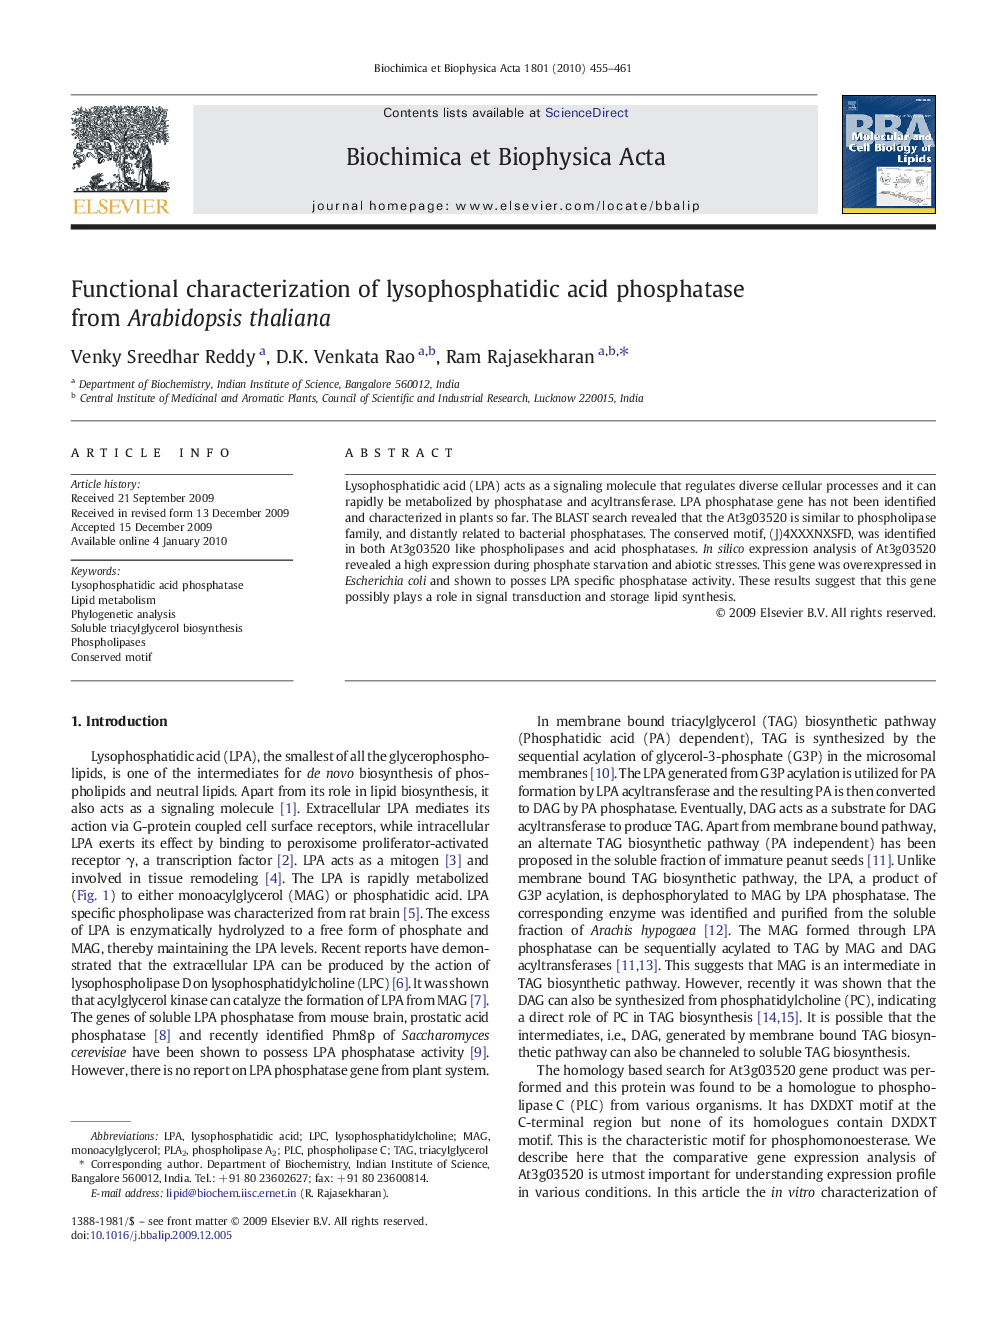 Functional characterization of lysophosphatidic acid phosphatase from Arabidopsis thaliana